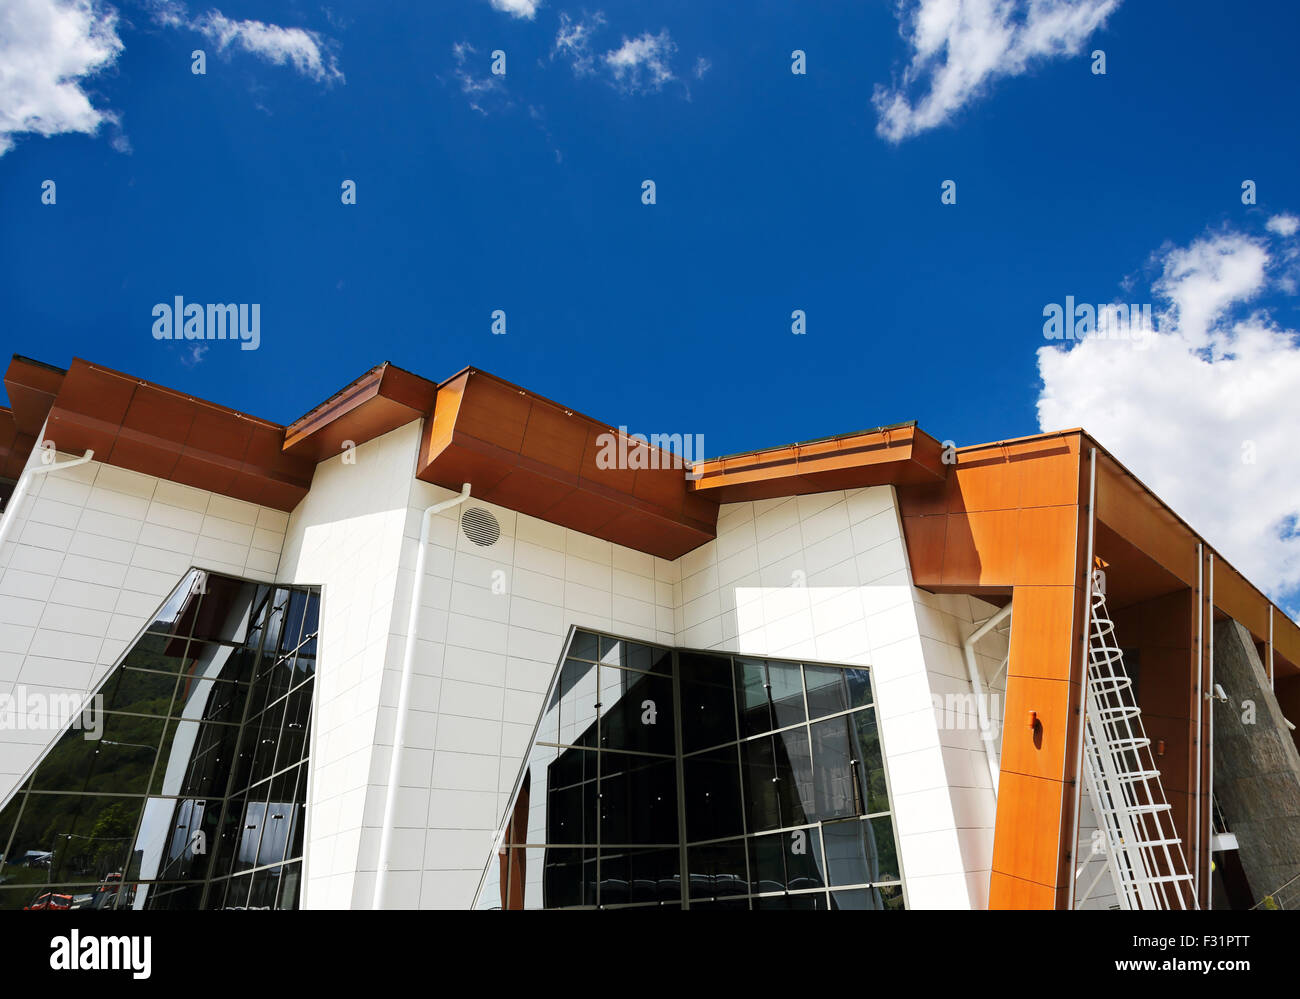 Grand bâtiment de style high-tech avec des murs blancs et de grandes fenêtres en verre Banque D'Images